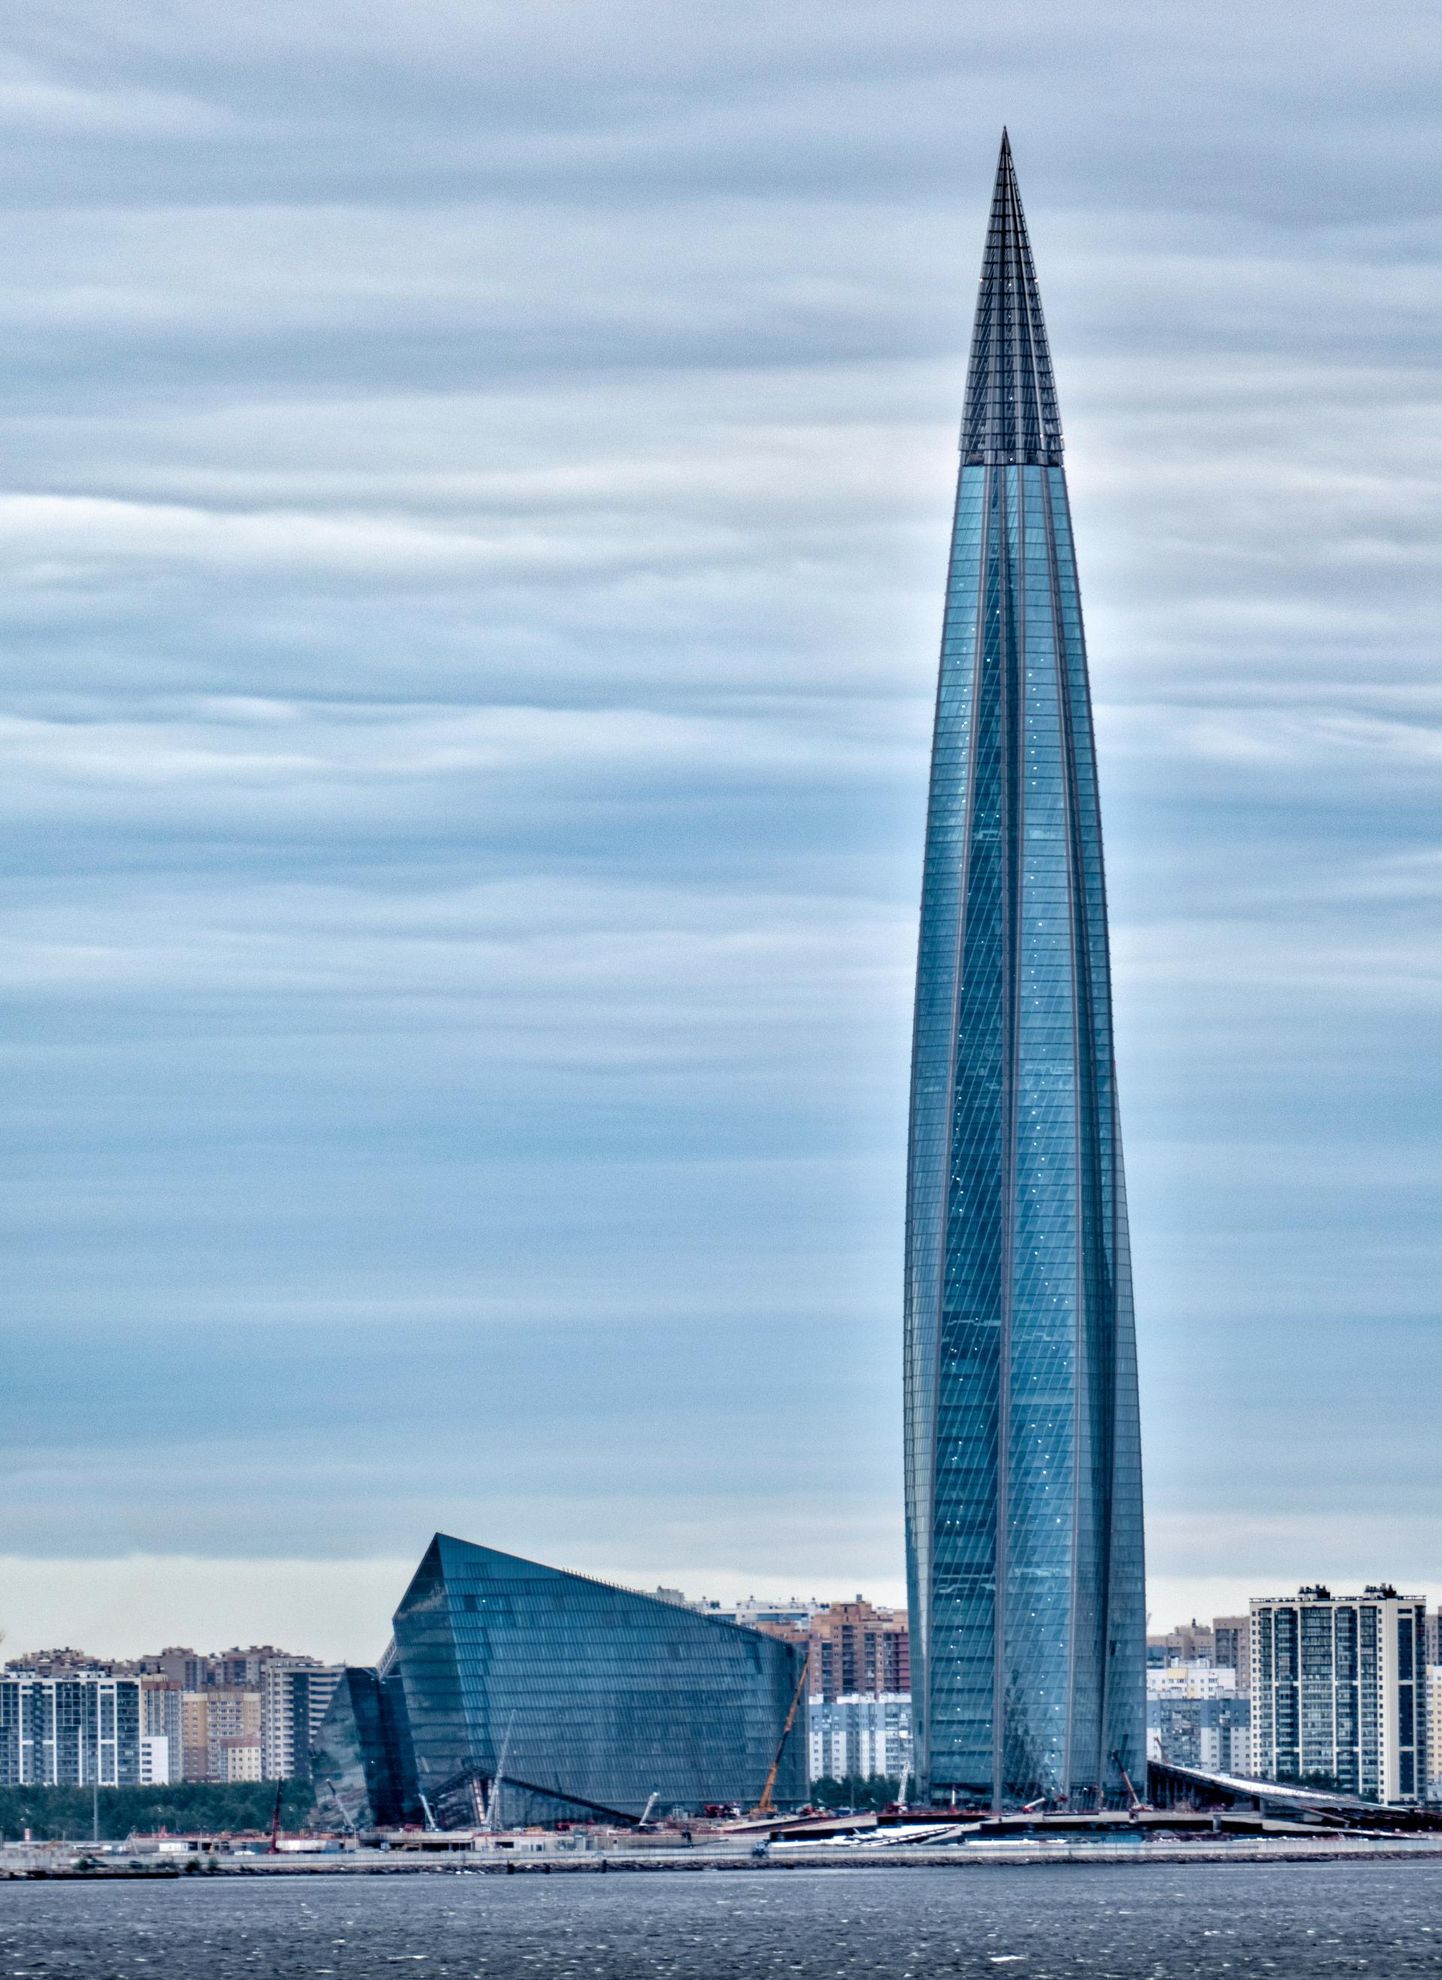 «Лахта центр» – общественно-деловой комплекс в Петербурге. Высота 87-этажного небоскреба составляет 462 м. «Лахта центр» является самым высоким зданием Европы.